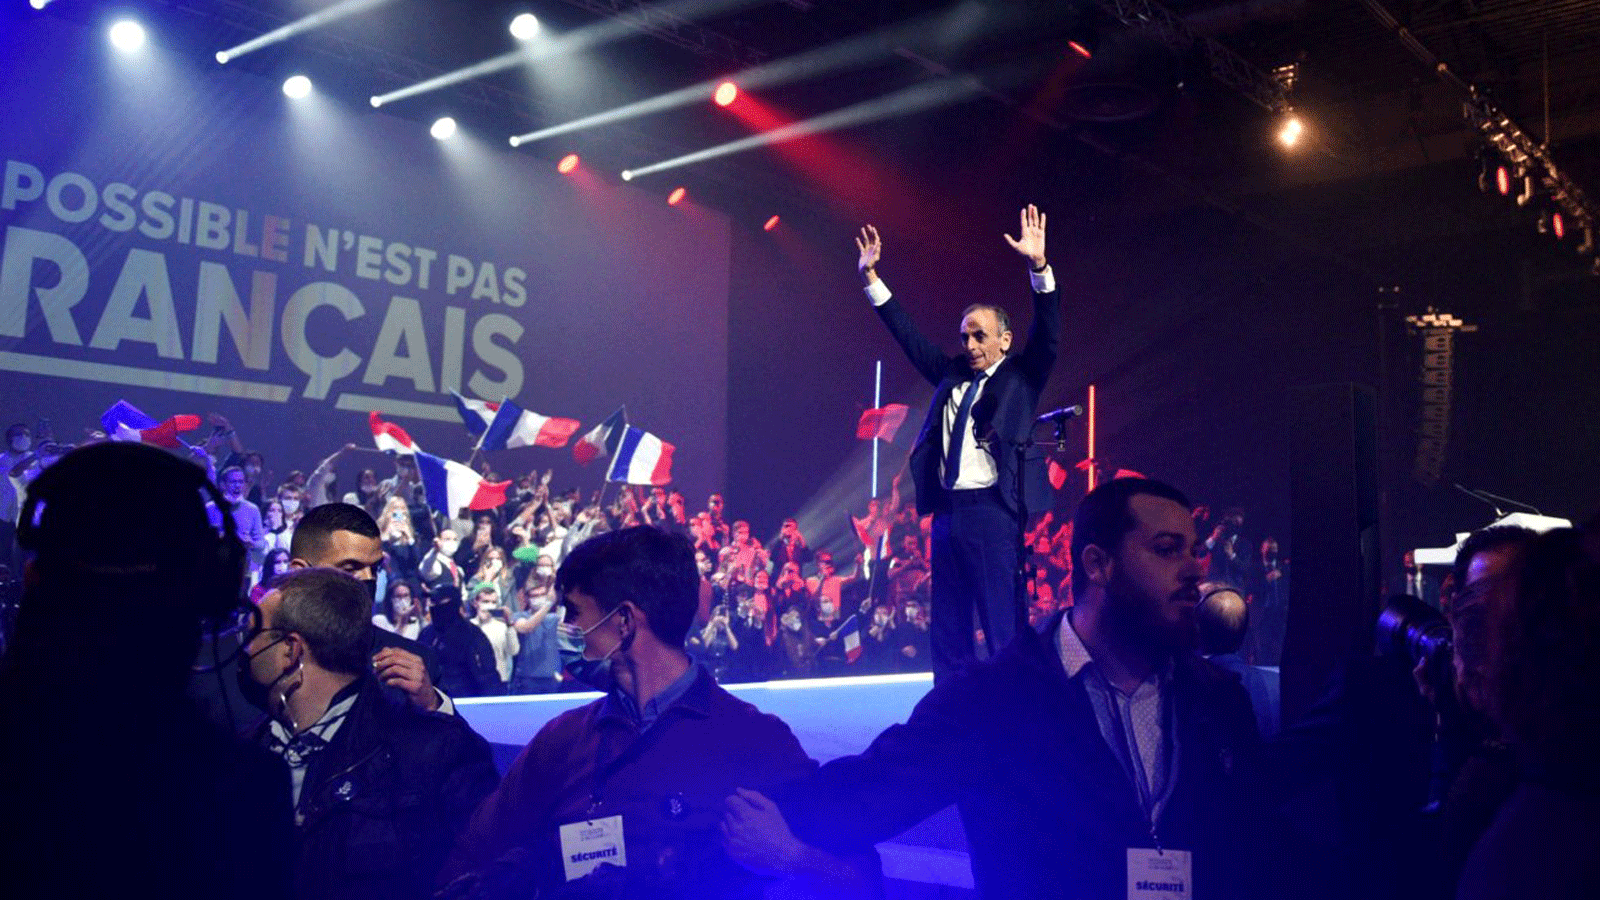 إريك زمور، المحلل الإعلامي الفرنسي من اليمين المتطرف، يُعلِن ترشحه للانتخابات الرئاسية لعام 2022 